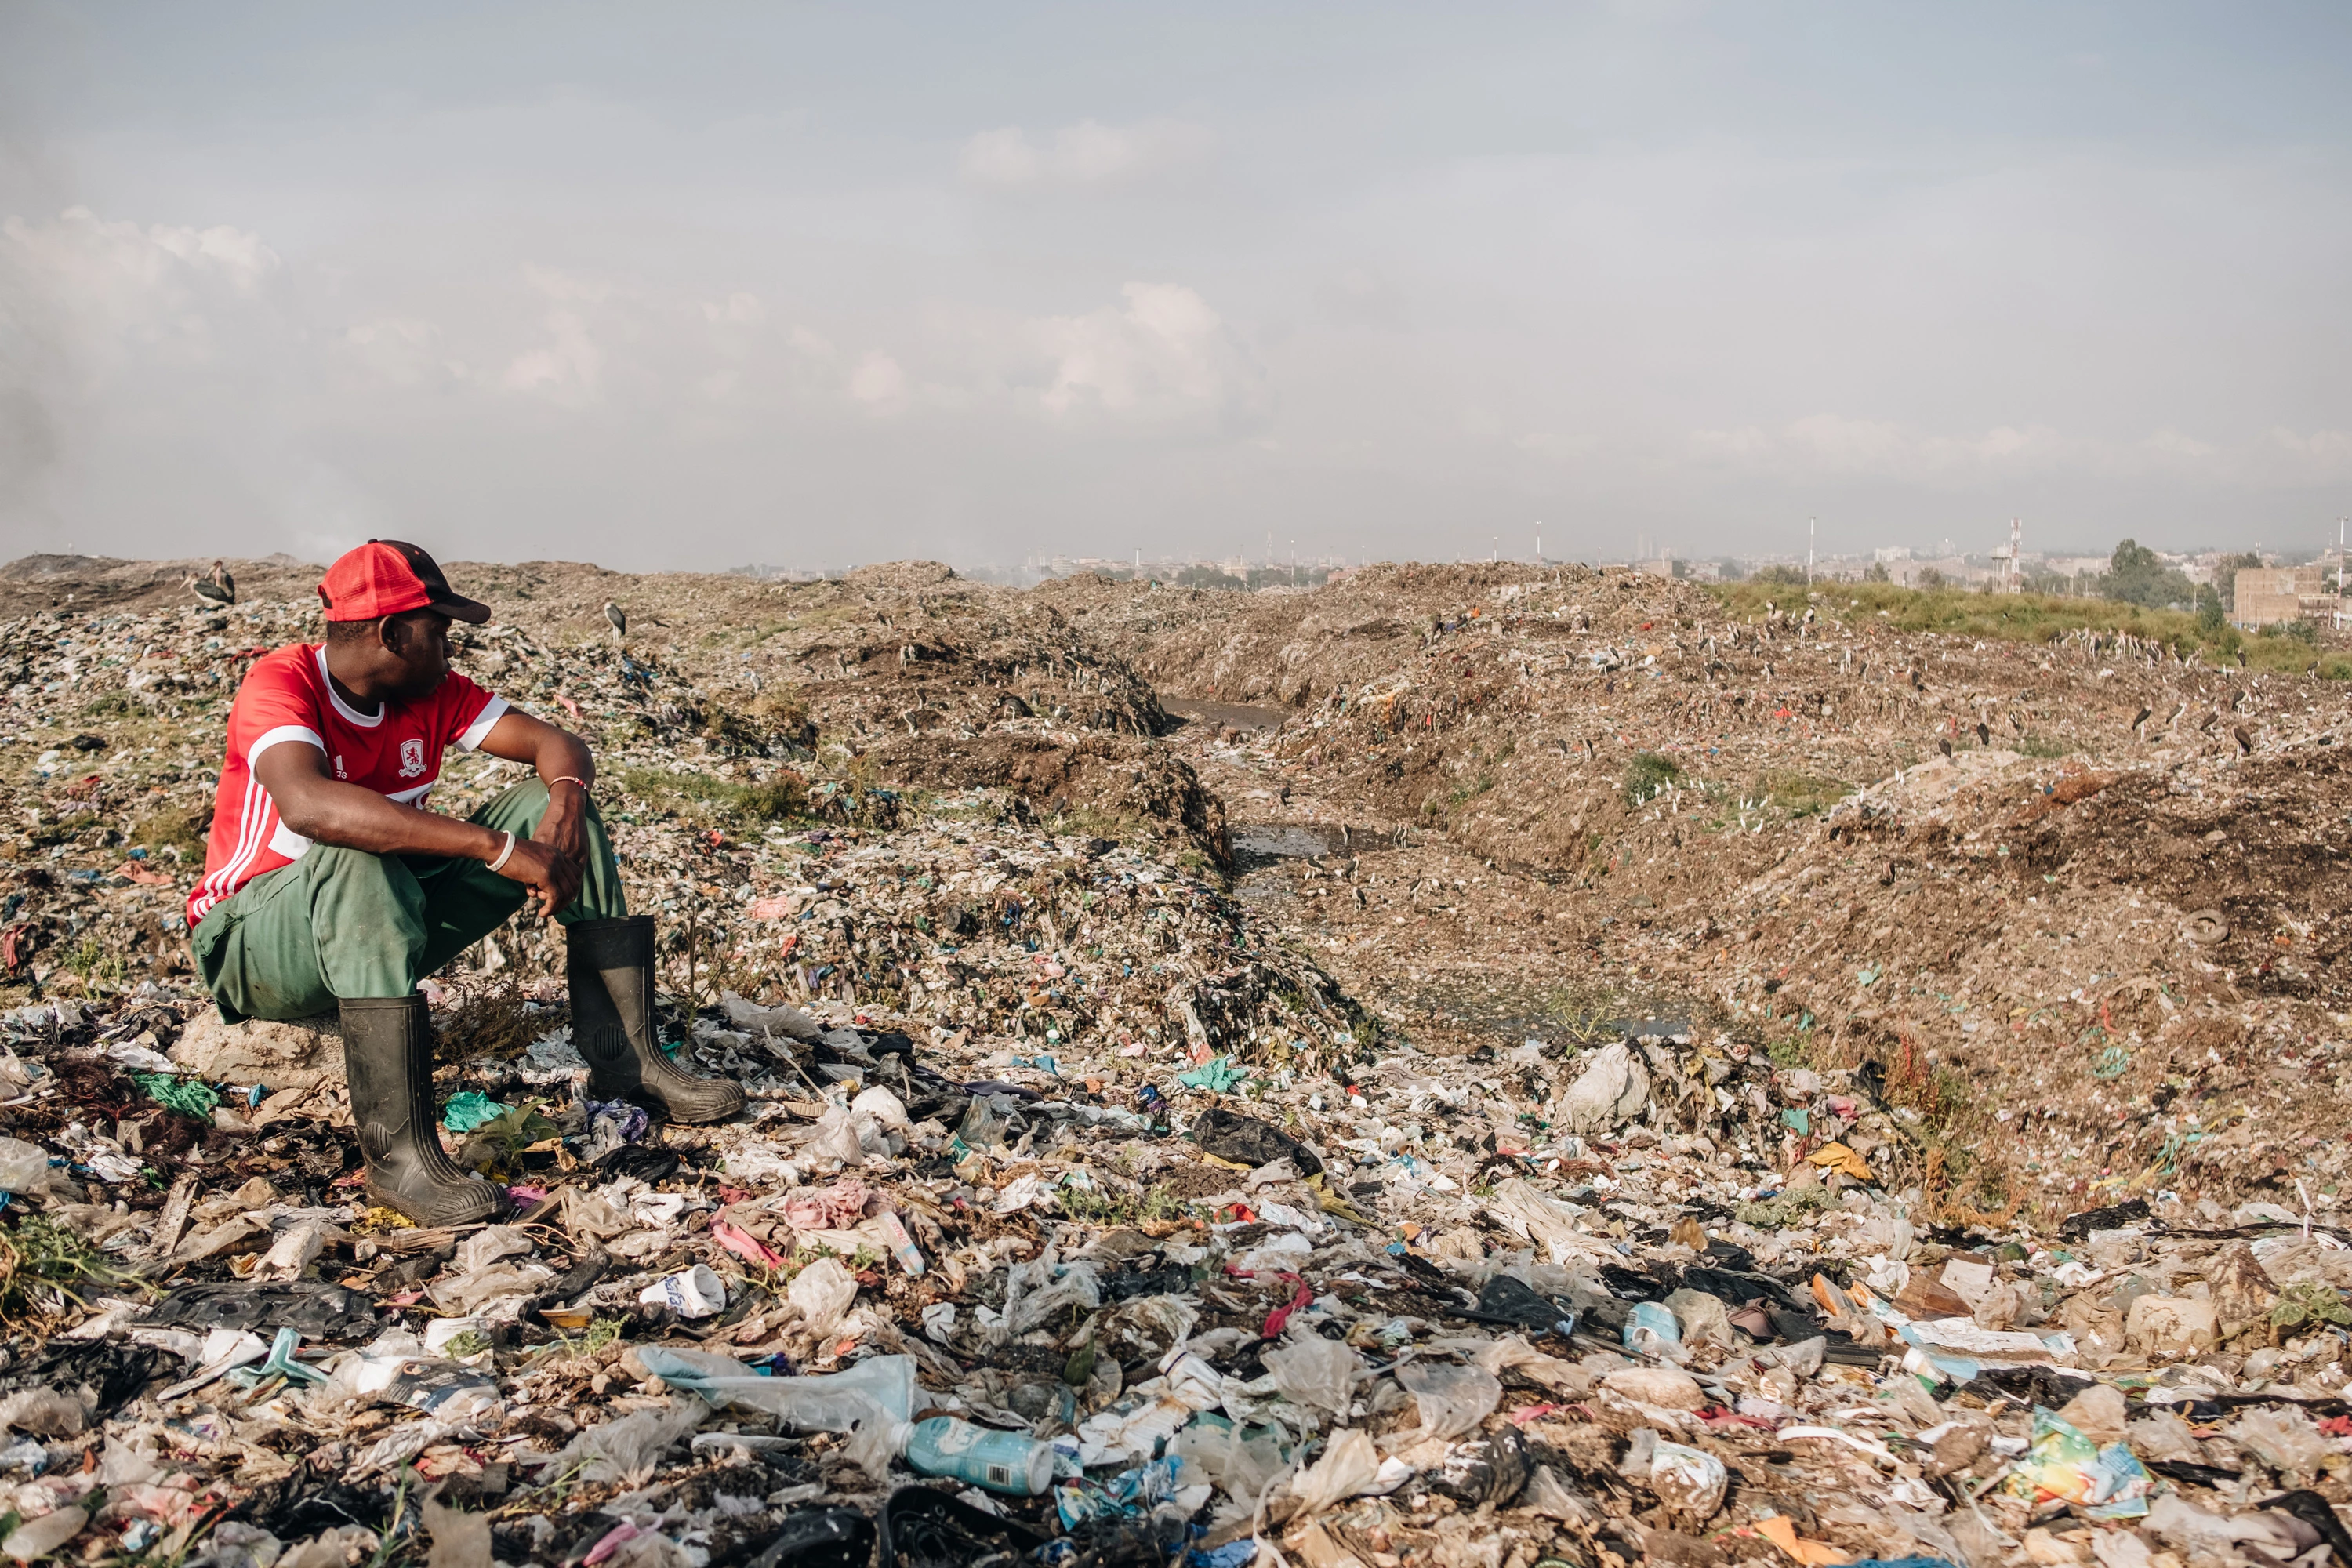 Mwangi Mboya overlooks the hills of Dandora Municiple Dump Site in Nairobi, Kenya. "I grew up here. These people are my family." Feb. 29, 2020. (Khadija Farah for The Intercept).